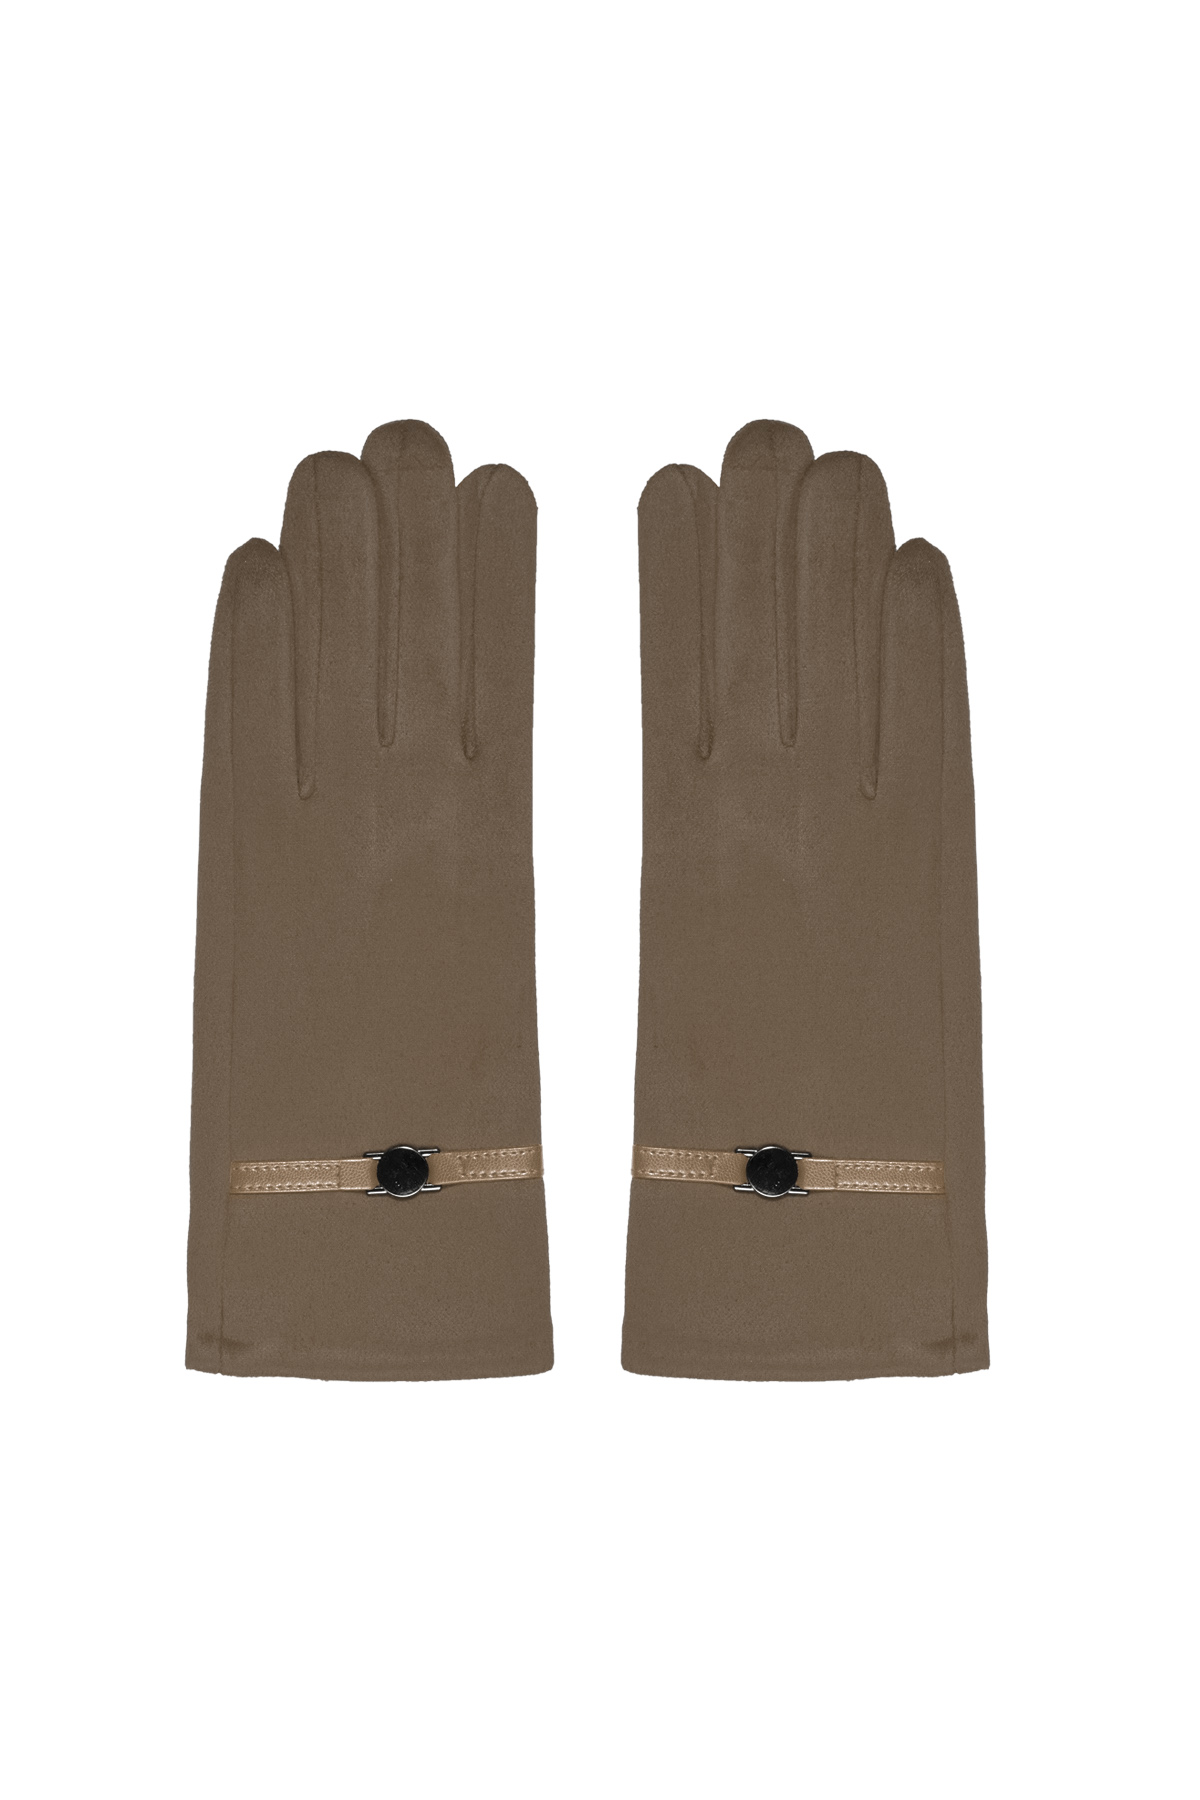 Glove strap - brown